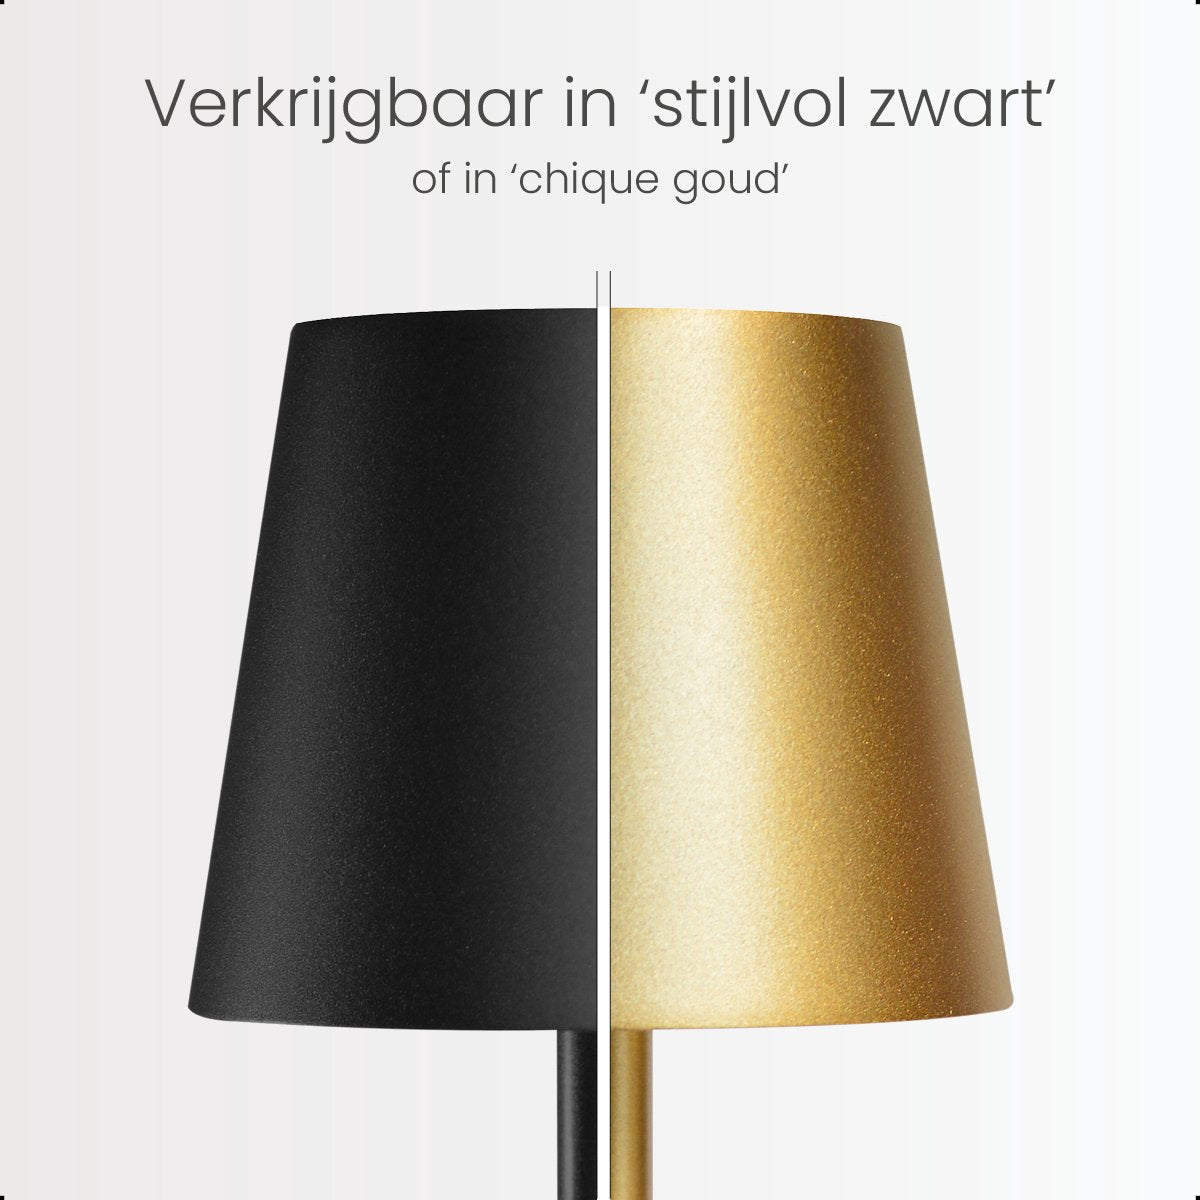 Goliving Essence Tafellamp Oplaadbaar – Draadloos en dimbaar – Moderne touch lamp – Nachtlamp Slaapkamer – 38 cm – Zwart